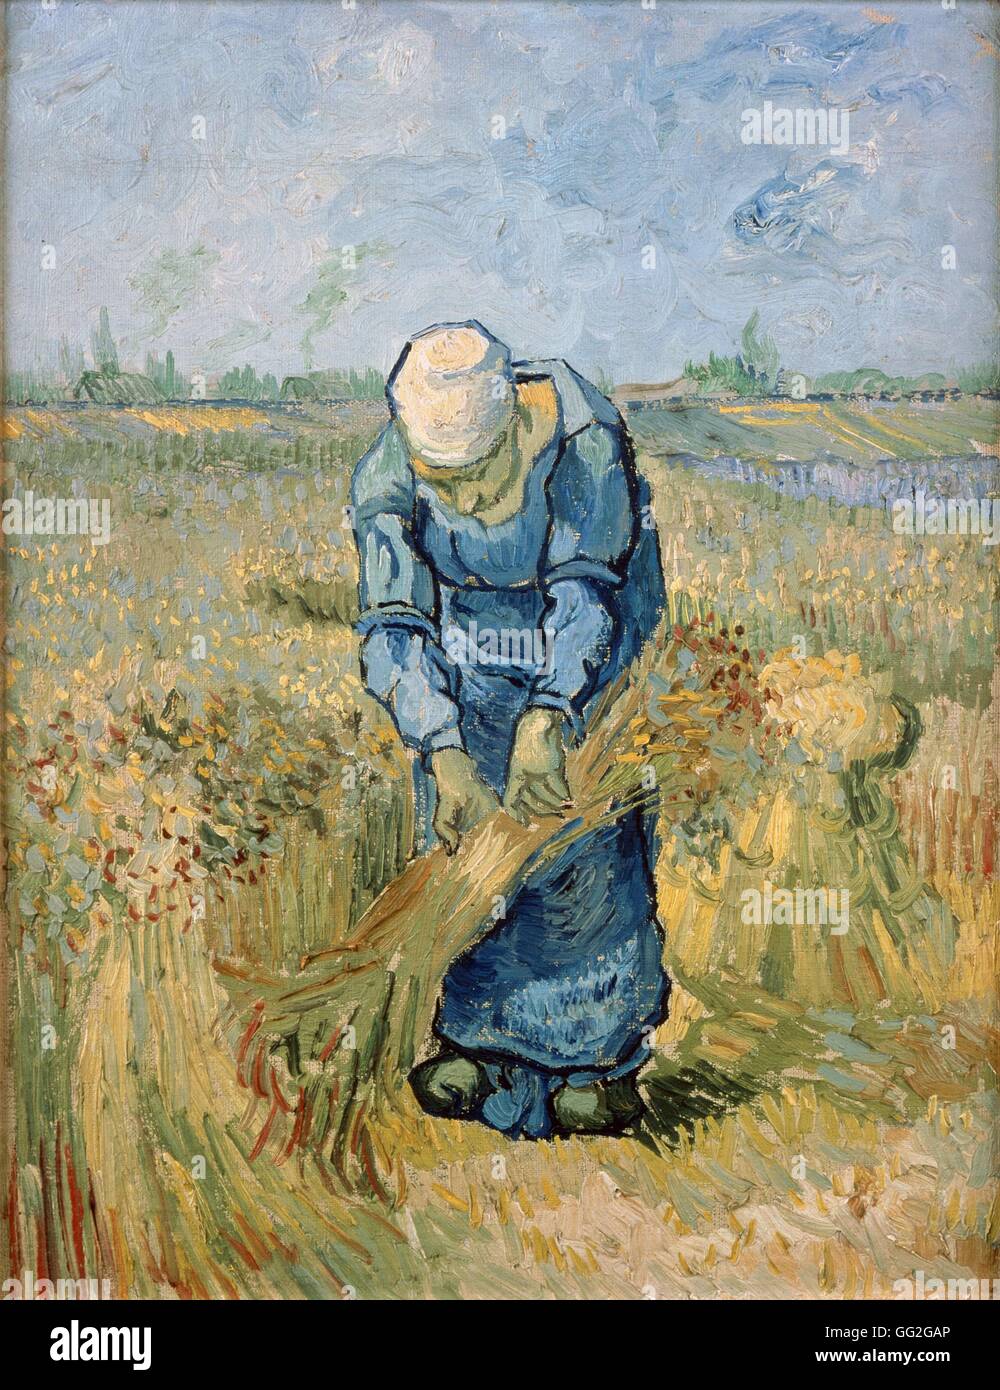 Vincent van Gogh scuola olandese Contadina legando covoni (dopo il miglio) settembre 1889 olio su tela (43,2 x 33,2 cm) Amsterdam, il museo di Van Gogh Foto Stock